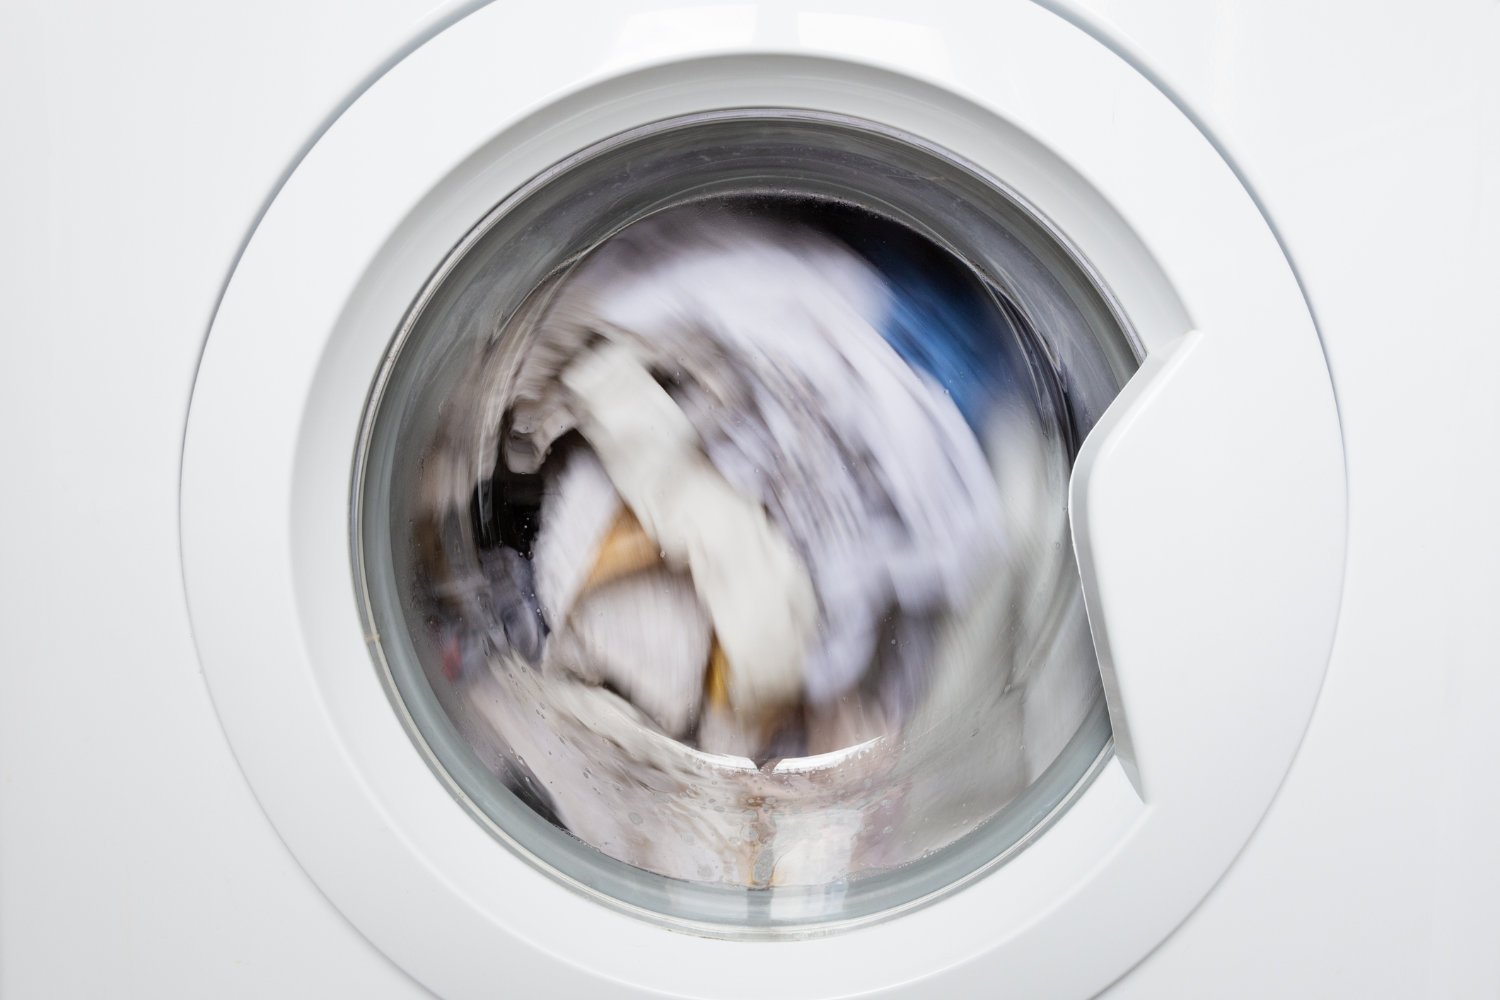 Oorzaak slecht centrifugeren wasmachine